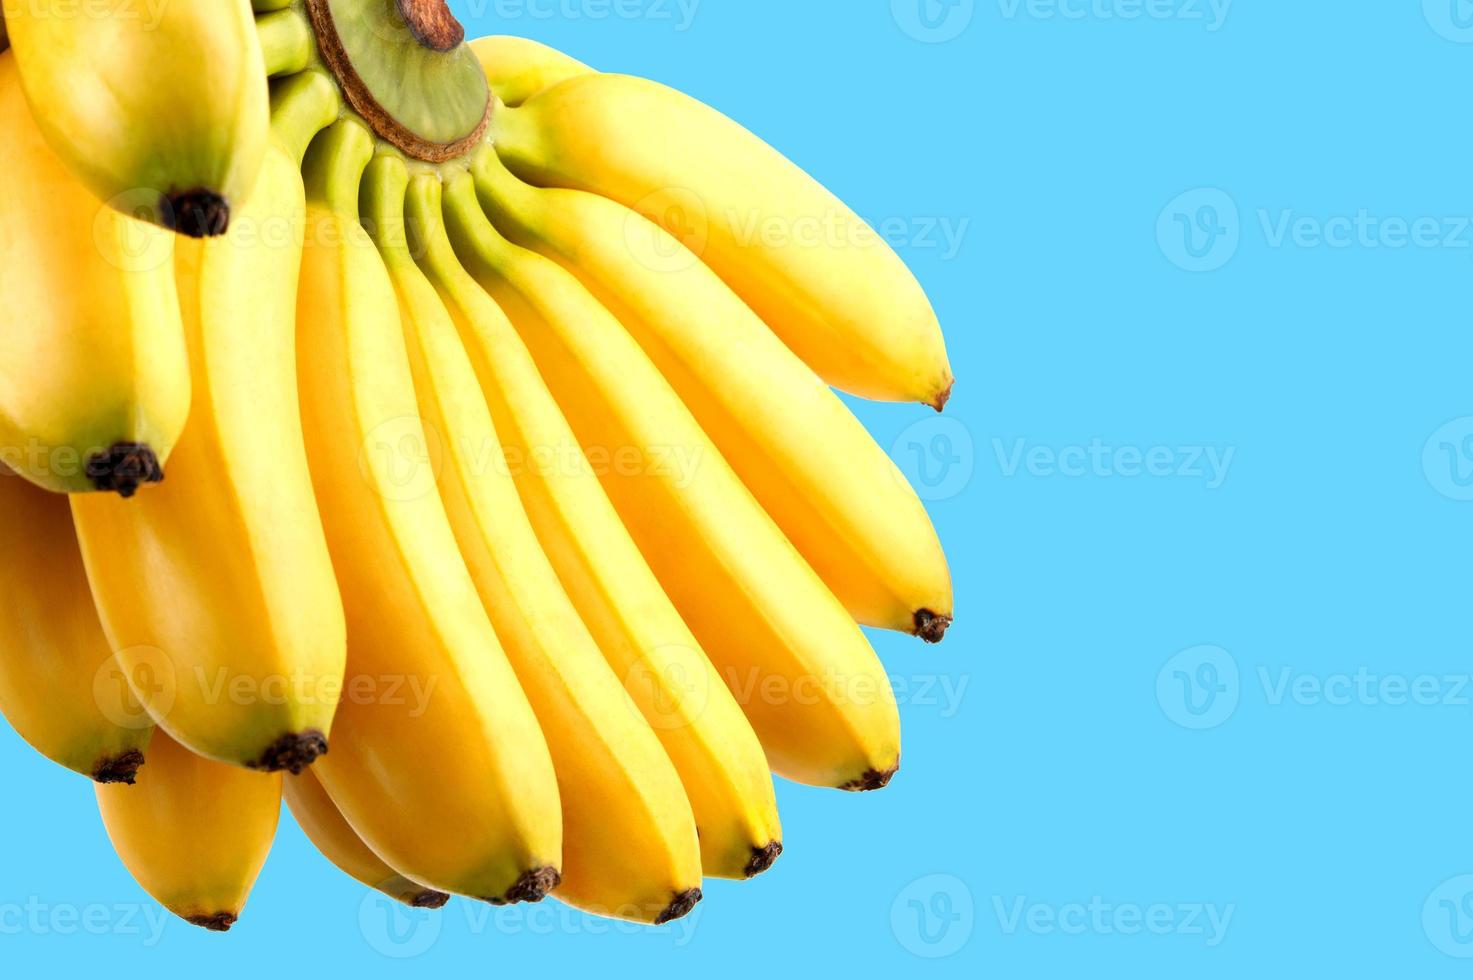 knippa av bananer på en blå bakgrund. utsökt mogen bananer. foto